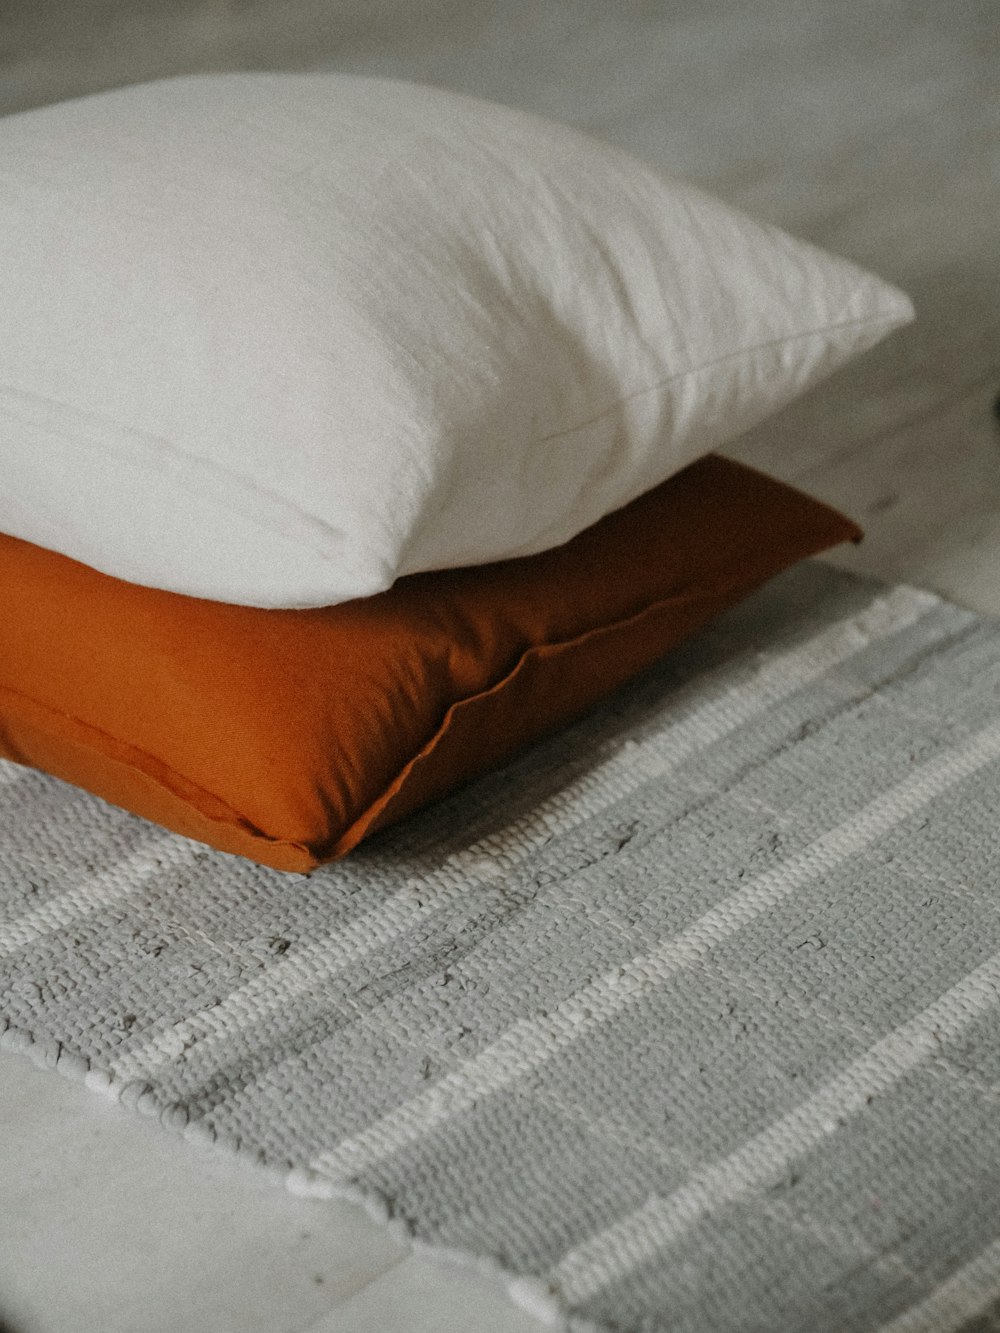 white and brown throw pillow on white textile